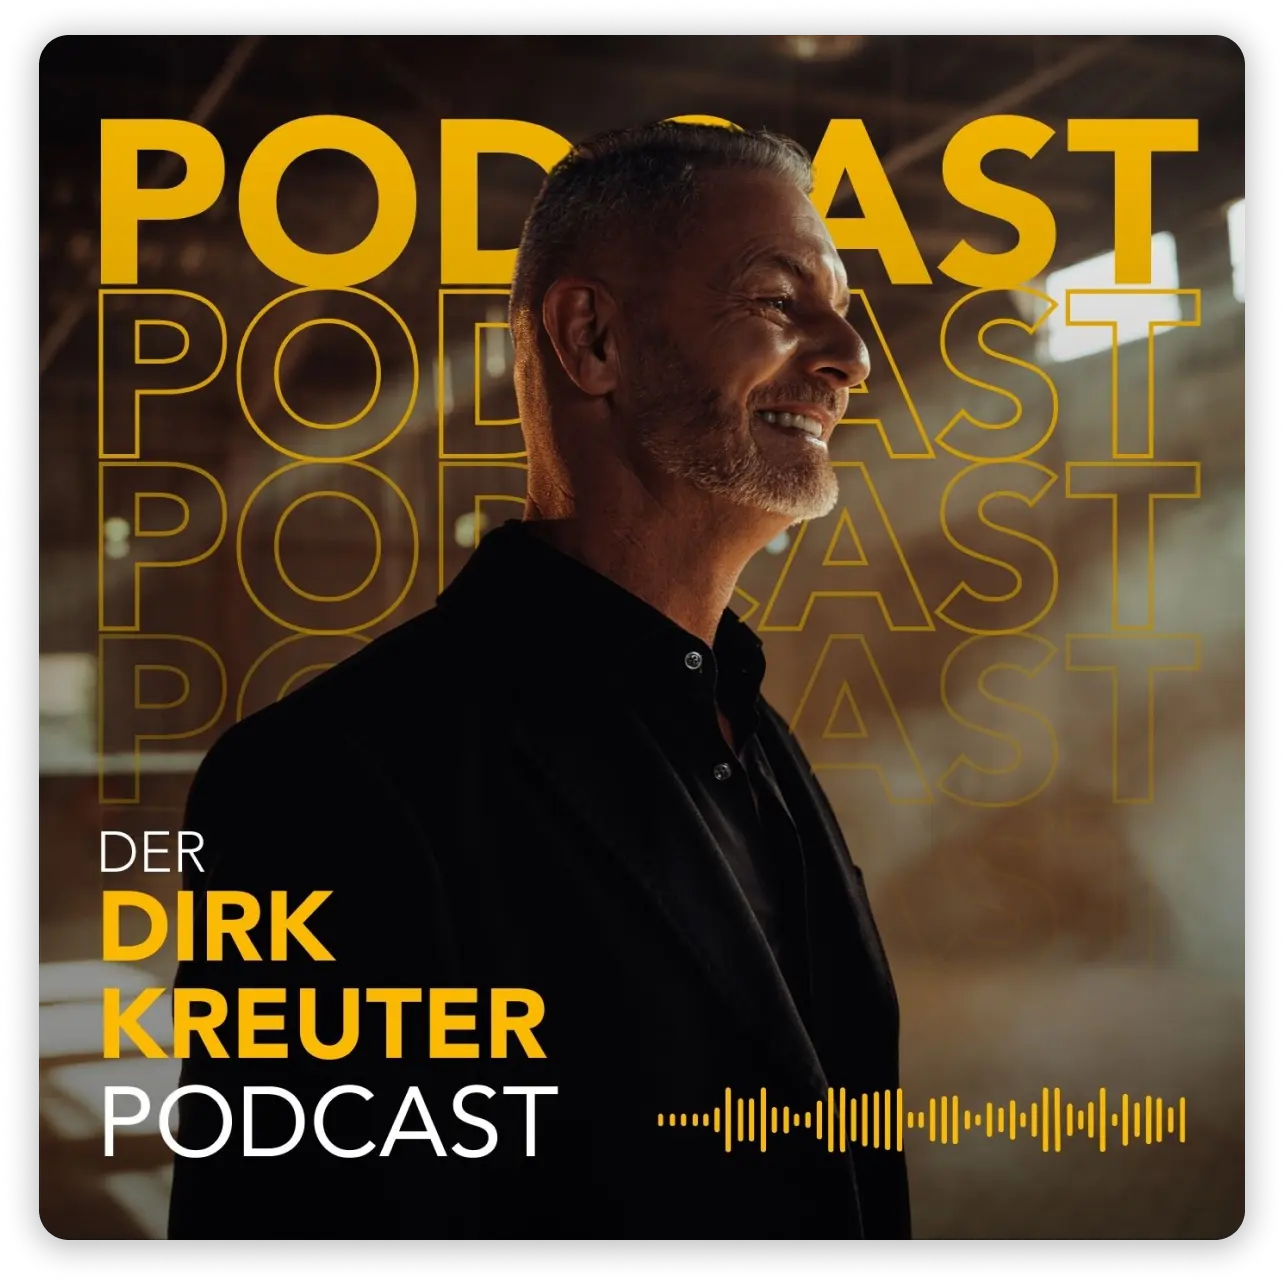 Der Dirk Kreuter Podcast Thumbnail